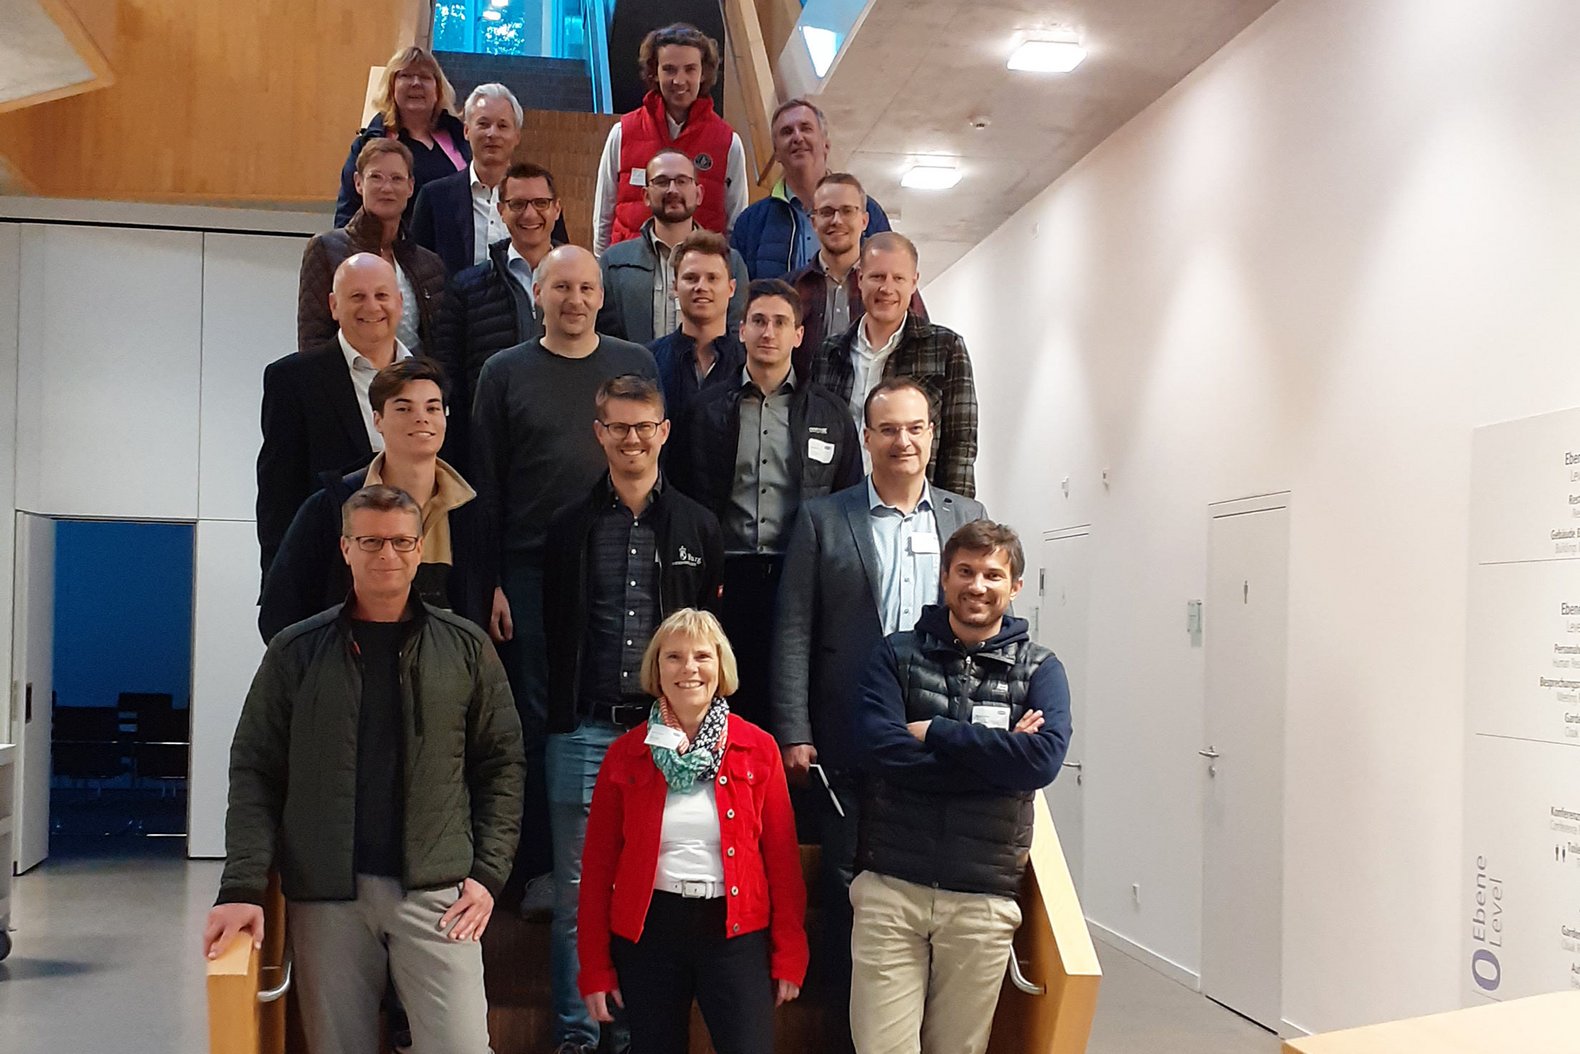 Gruppenfoto des AlumniAfterwork Besuchs bei der J. Schmalz GmbH des Campus Horb